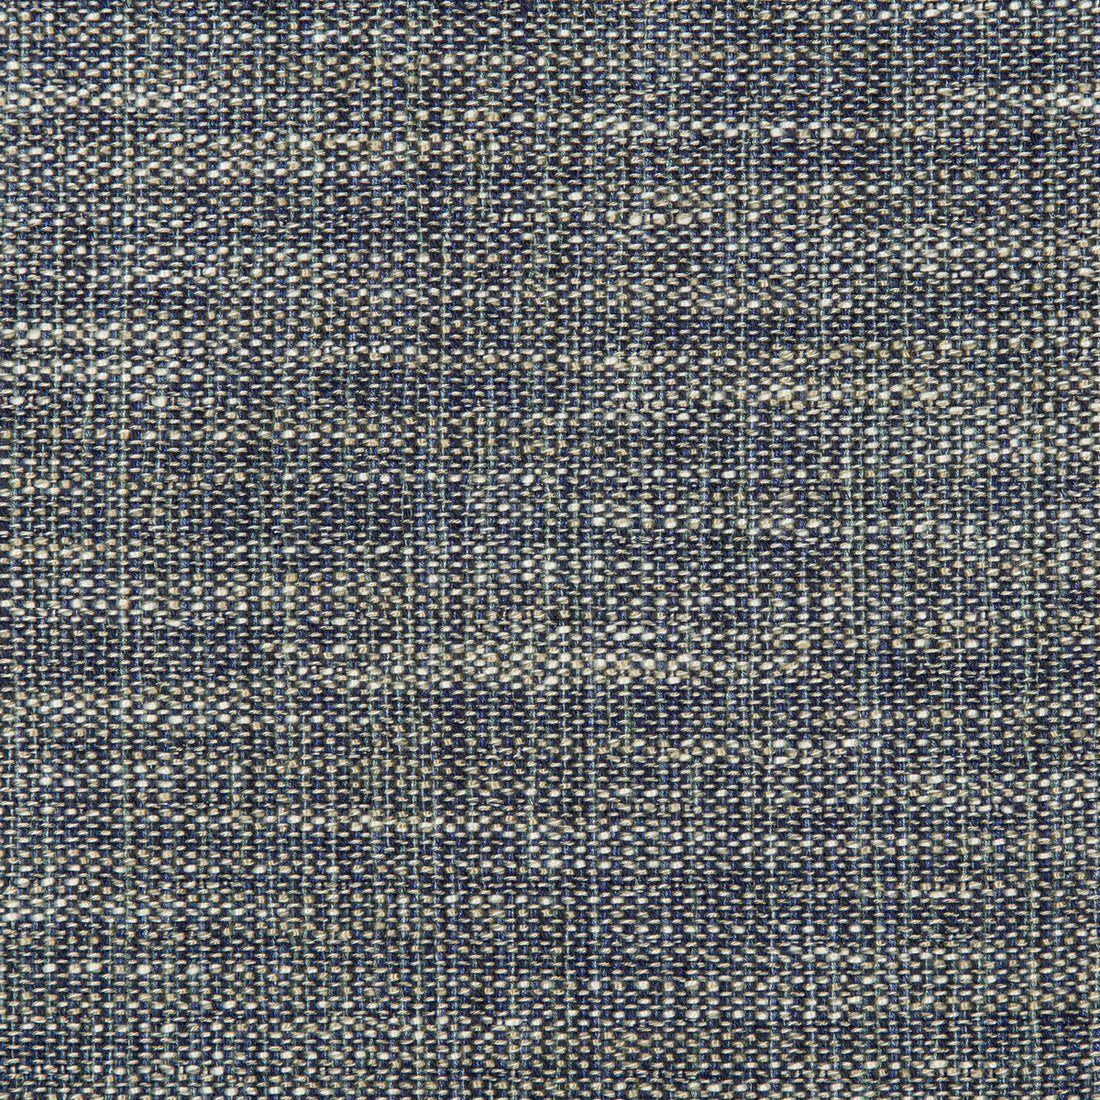 Kravet Design fabric in 35658-51 color - pattern 35658.51.0 - by Kravet Design